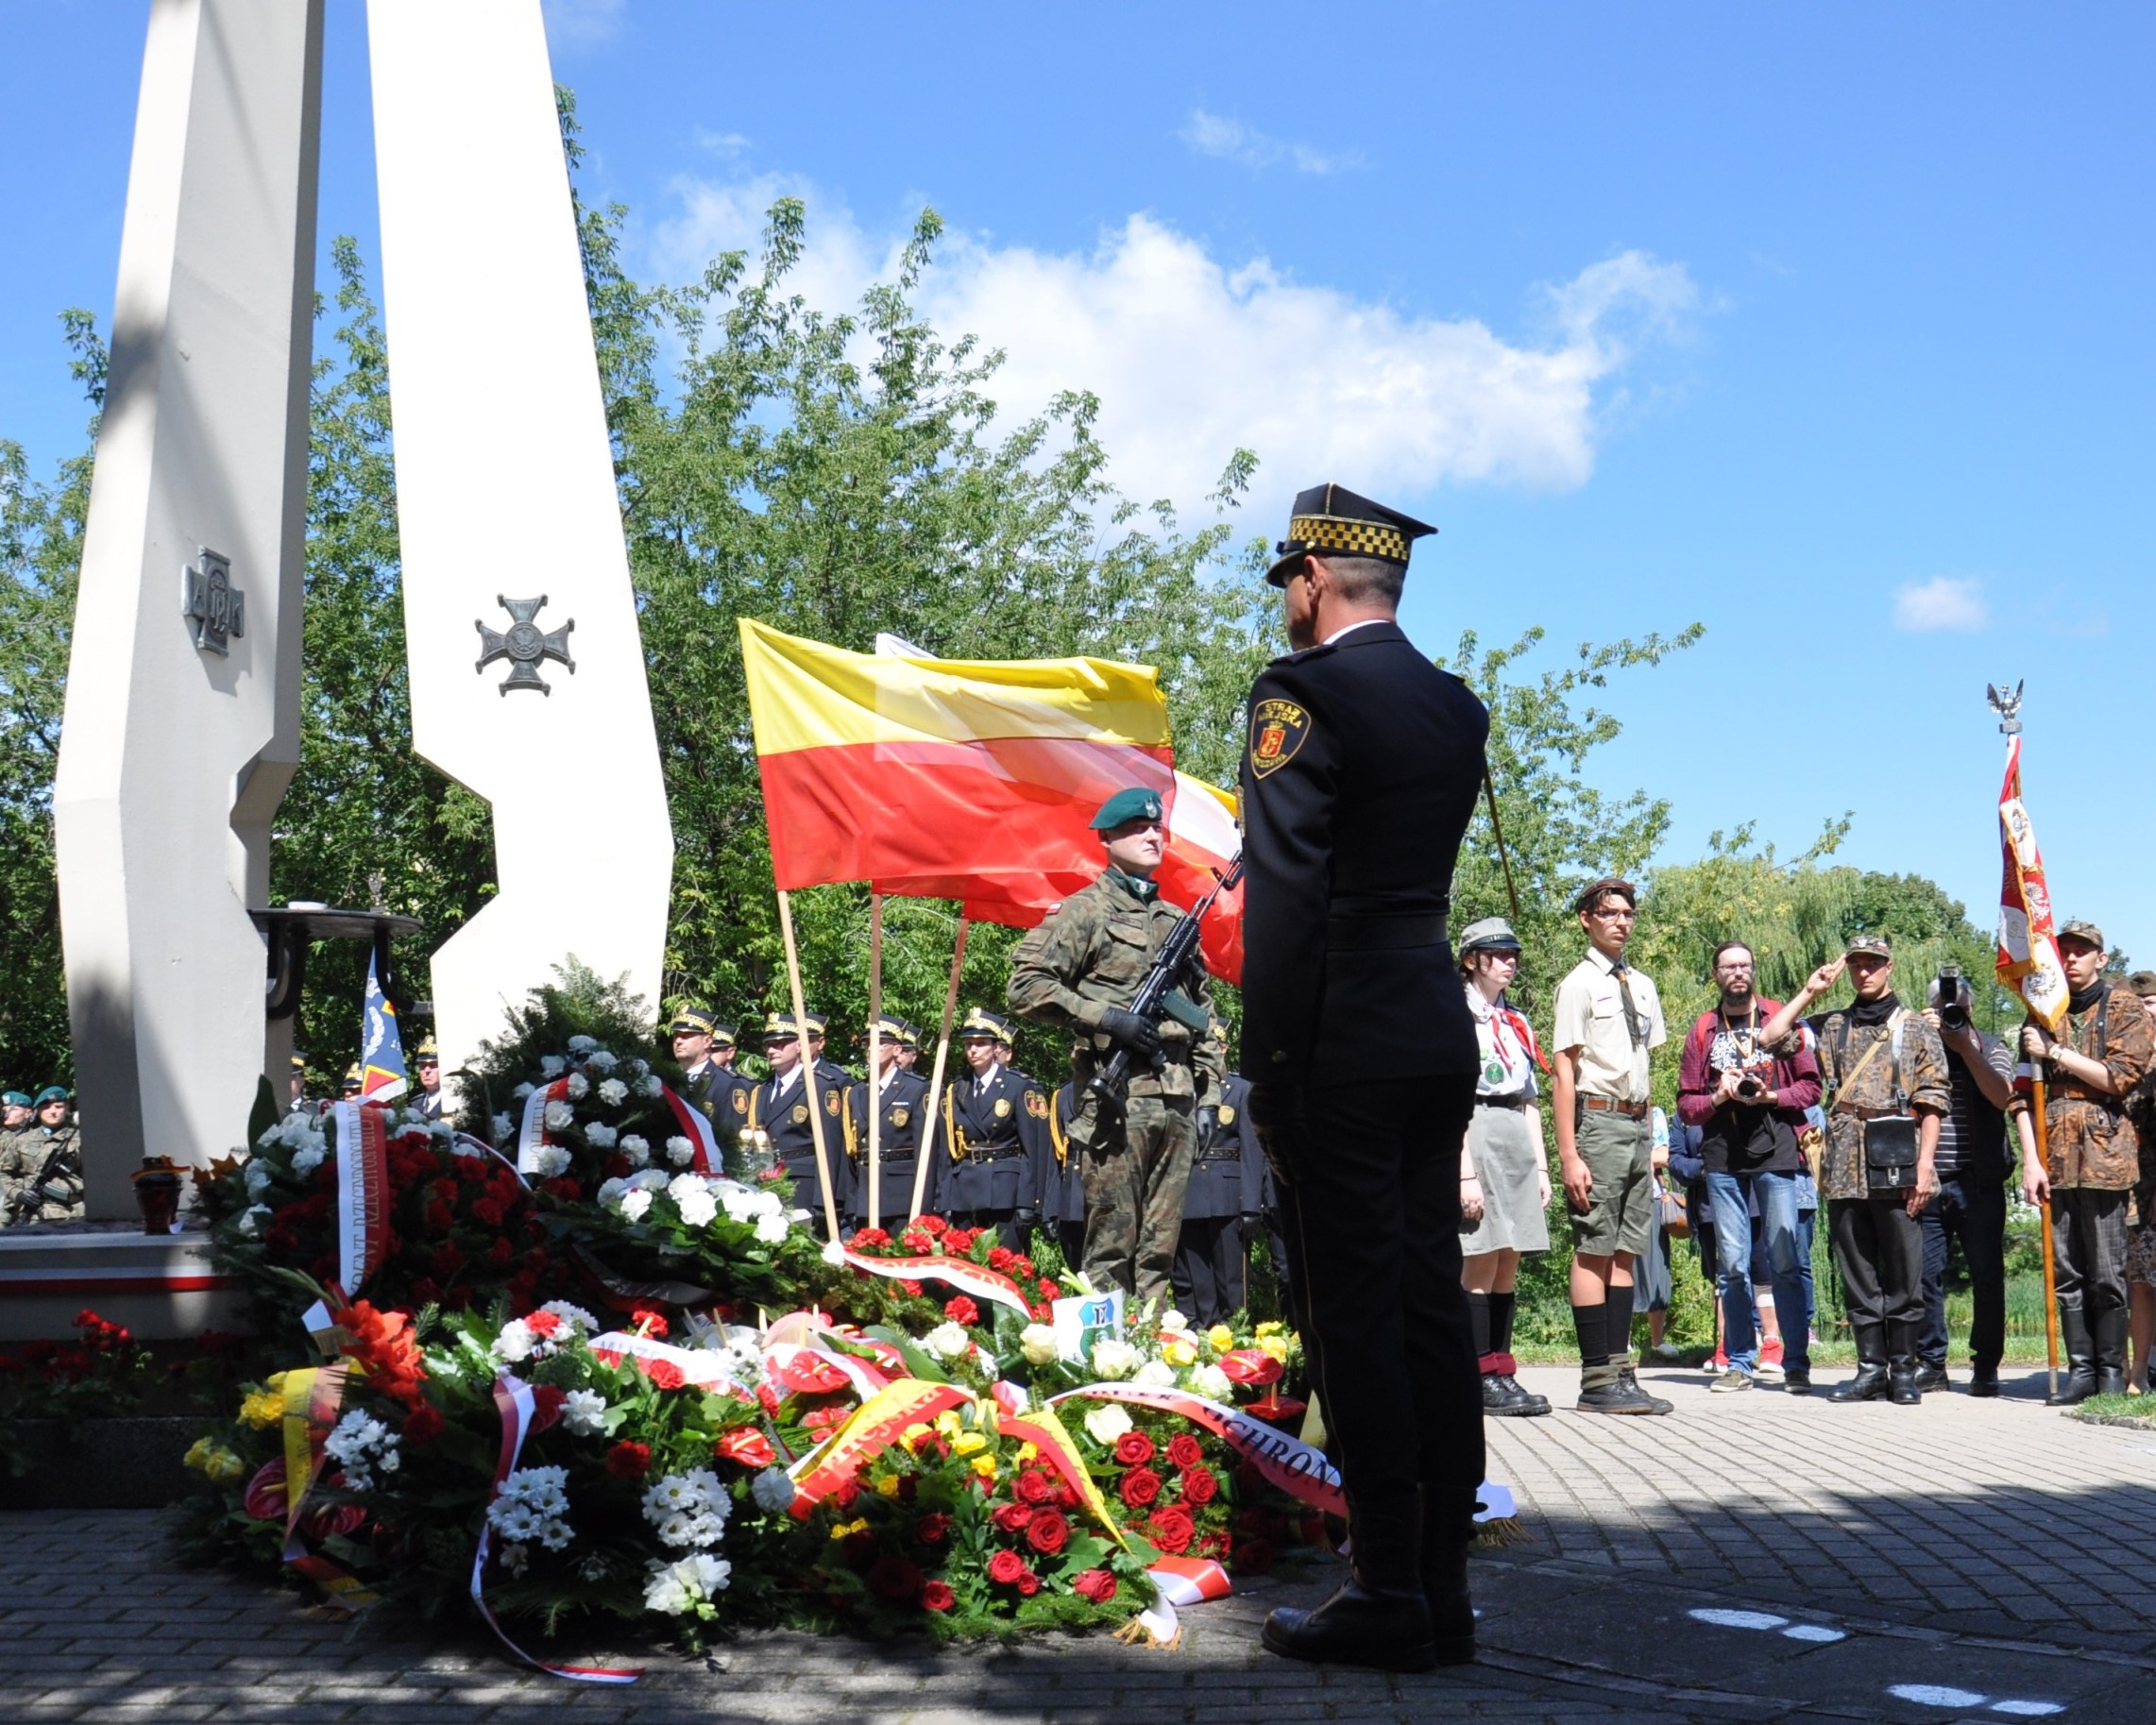 Strażnik miejski oddający salut przed pomnikiem Żołnierzy "Baszty" przy ulicy Dworkowej w Warszawie.